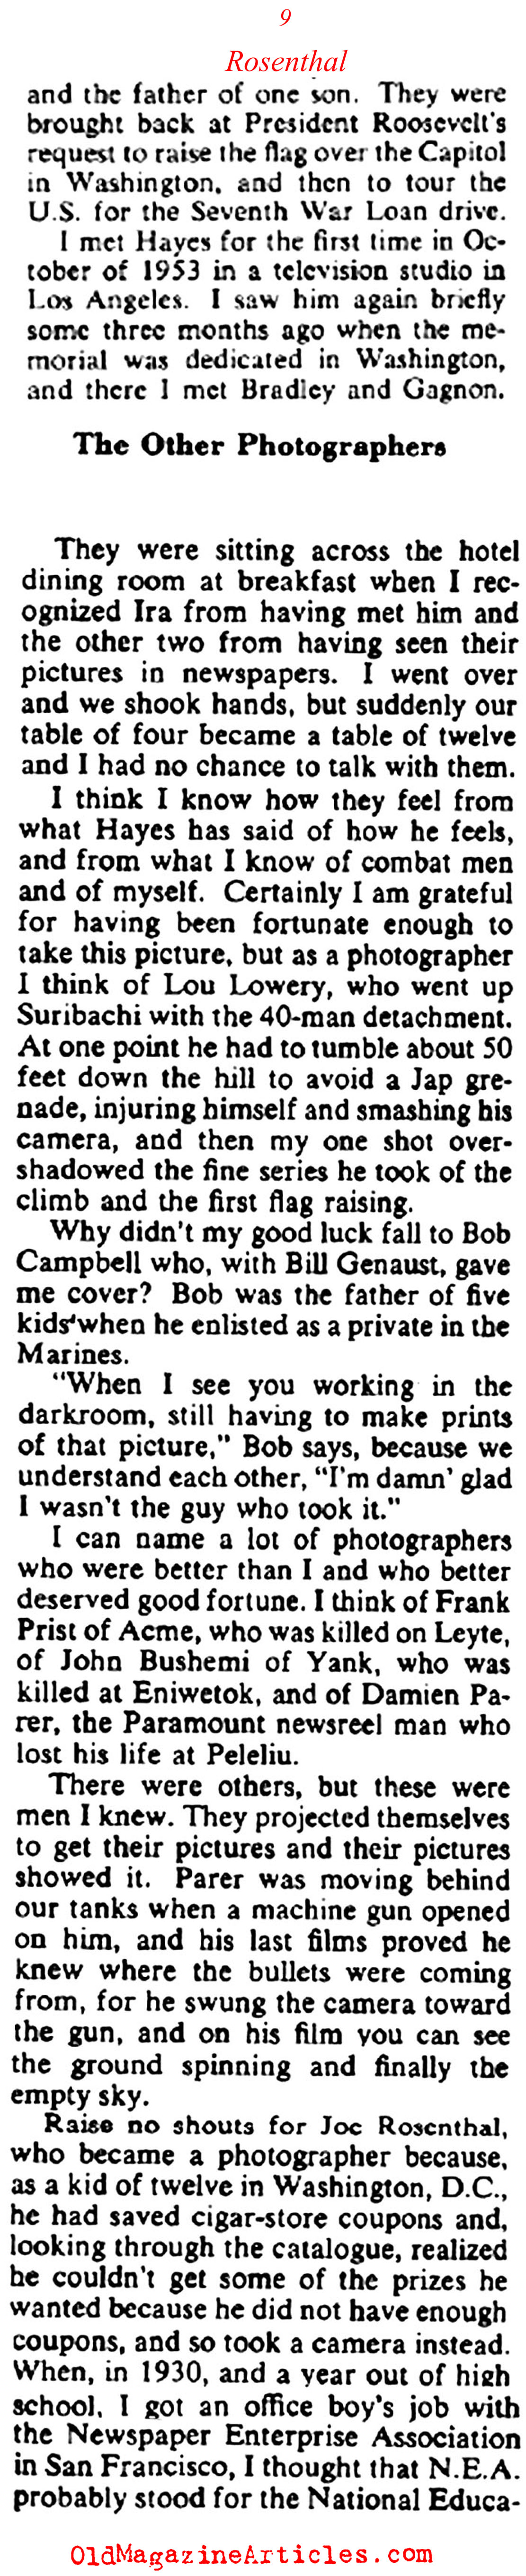 Joe Rosenthal on Iwo Jima (Collier's Magazine, 1955)